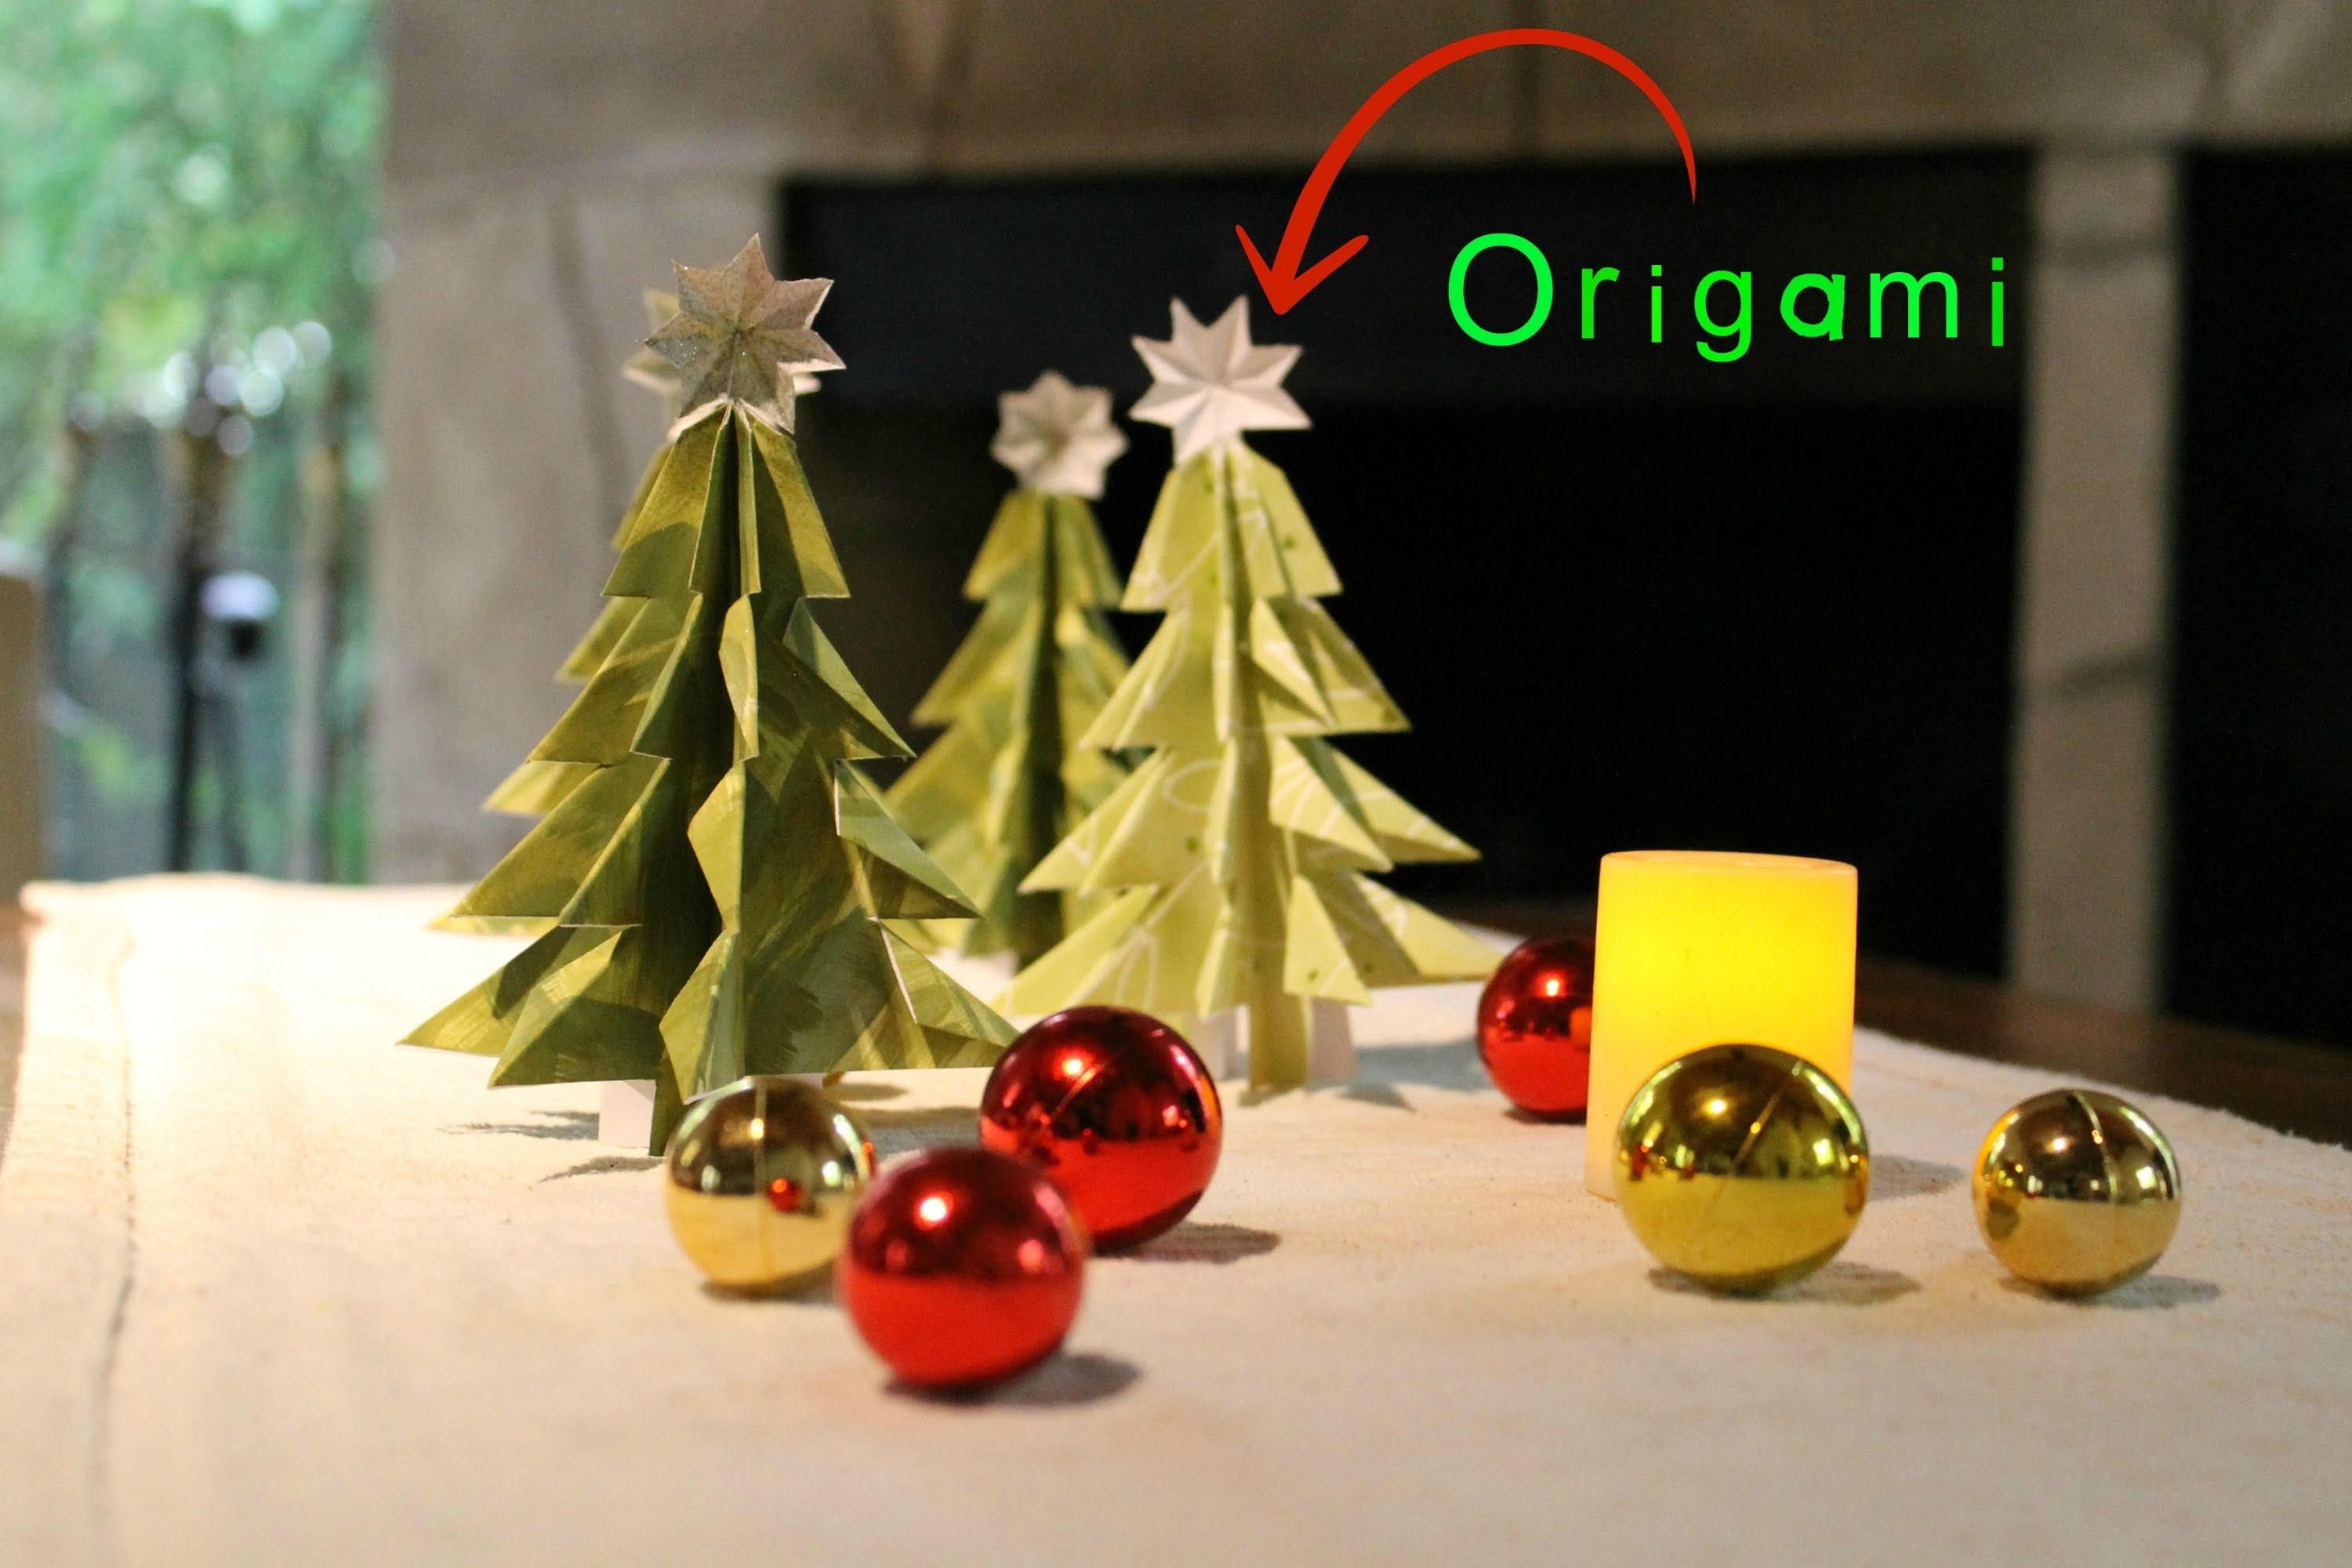 Día de Amigas - Como hacer un árbol navideño en papel - Técnica Origami